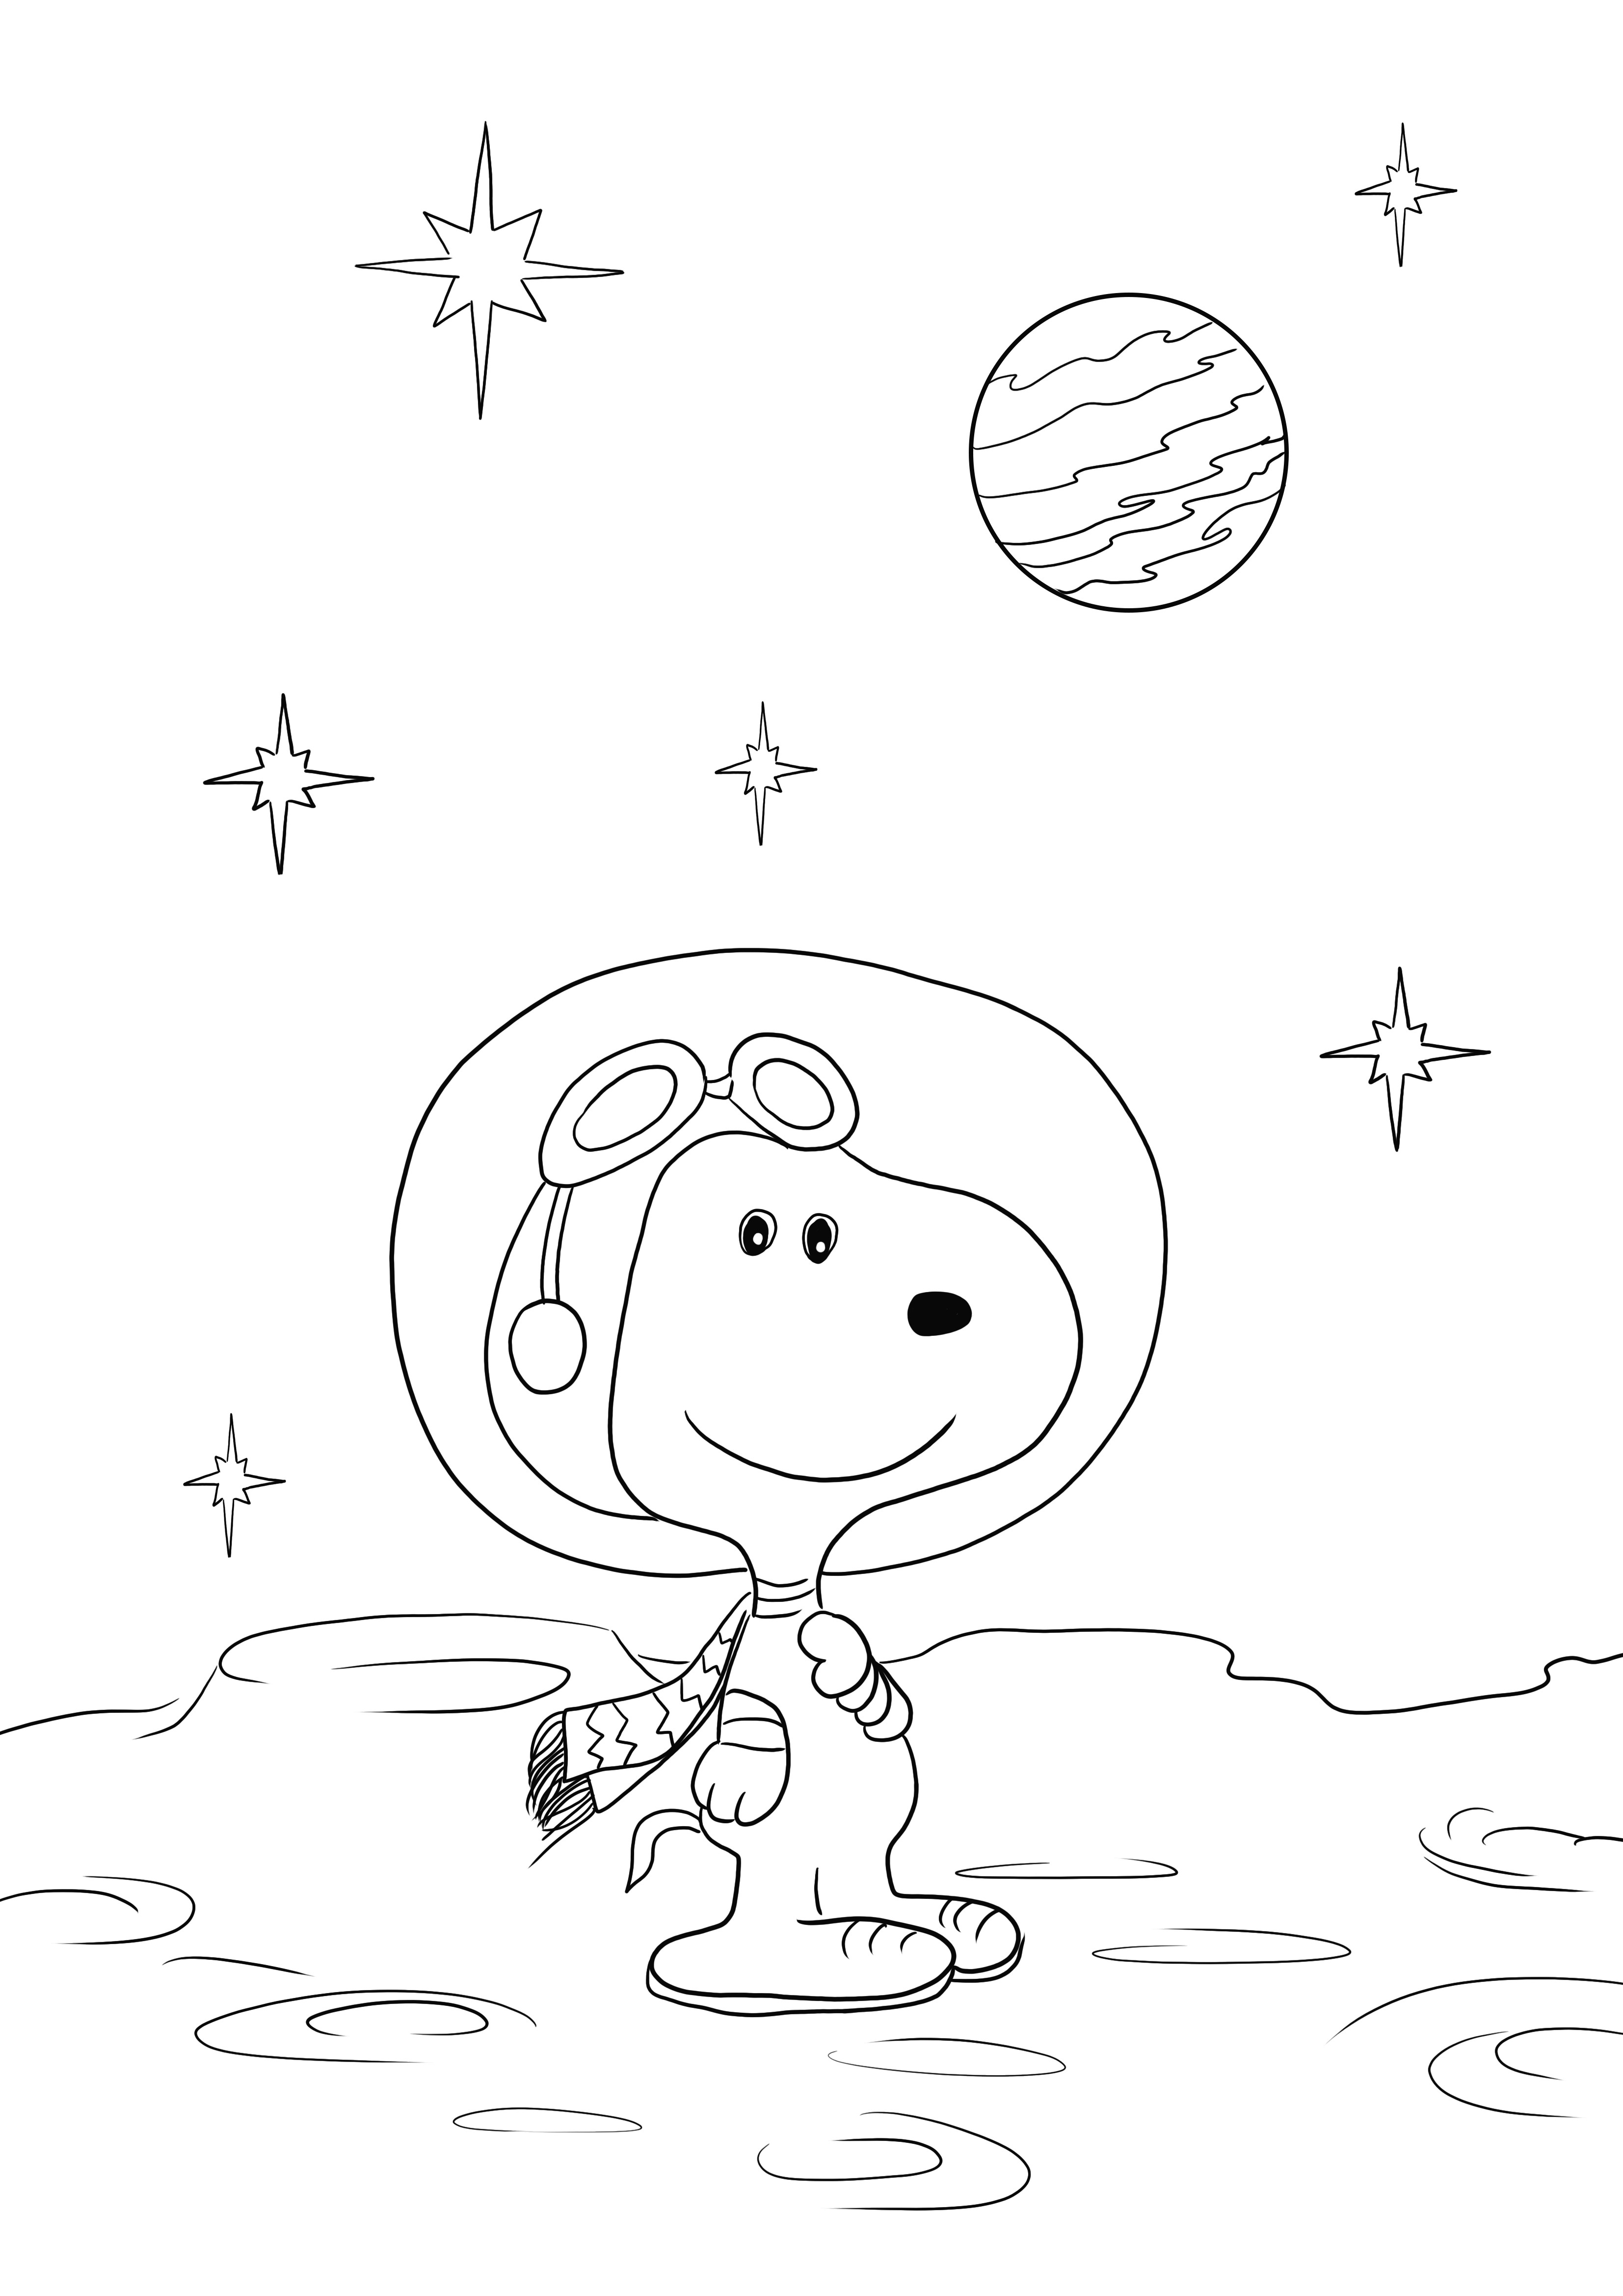 Aquí está nuestra hoja de Snoopy en el espacio gratis para descargar o imprimir y colorear